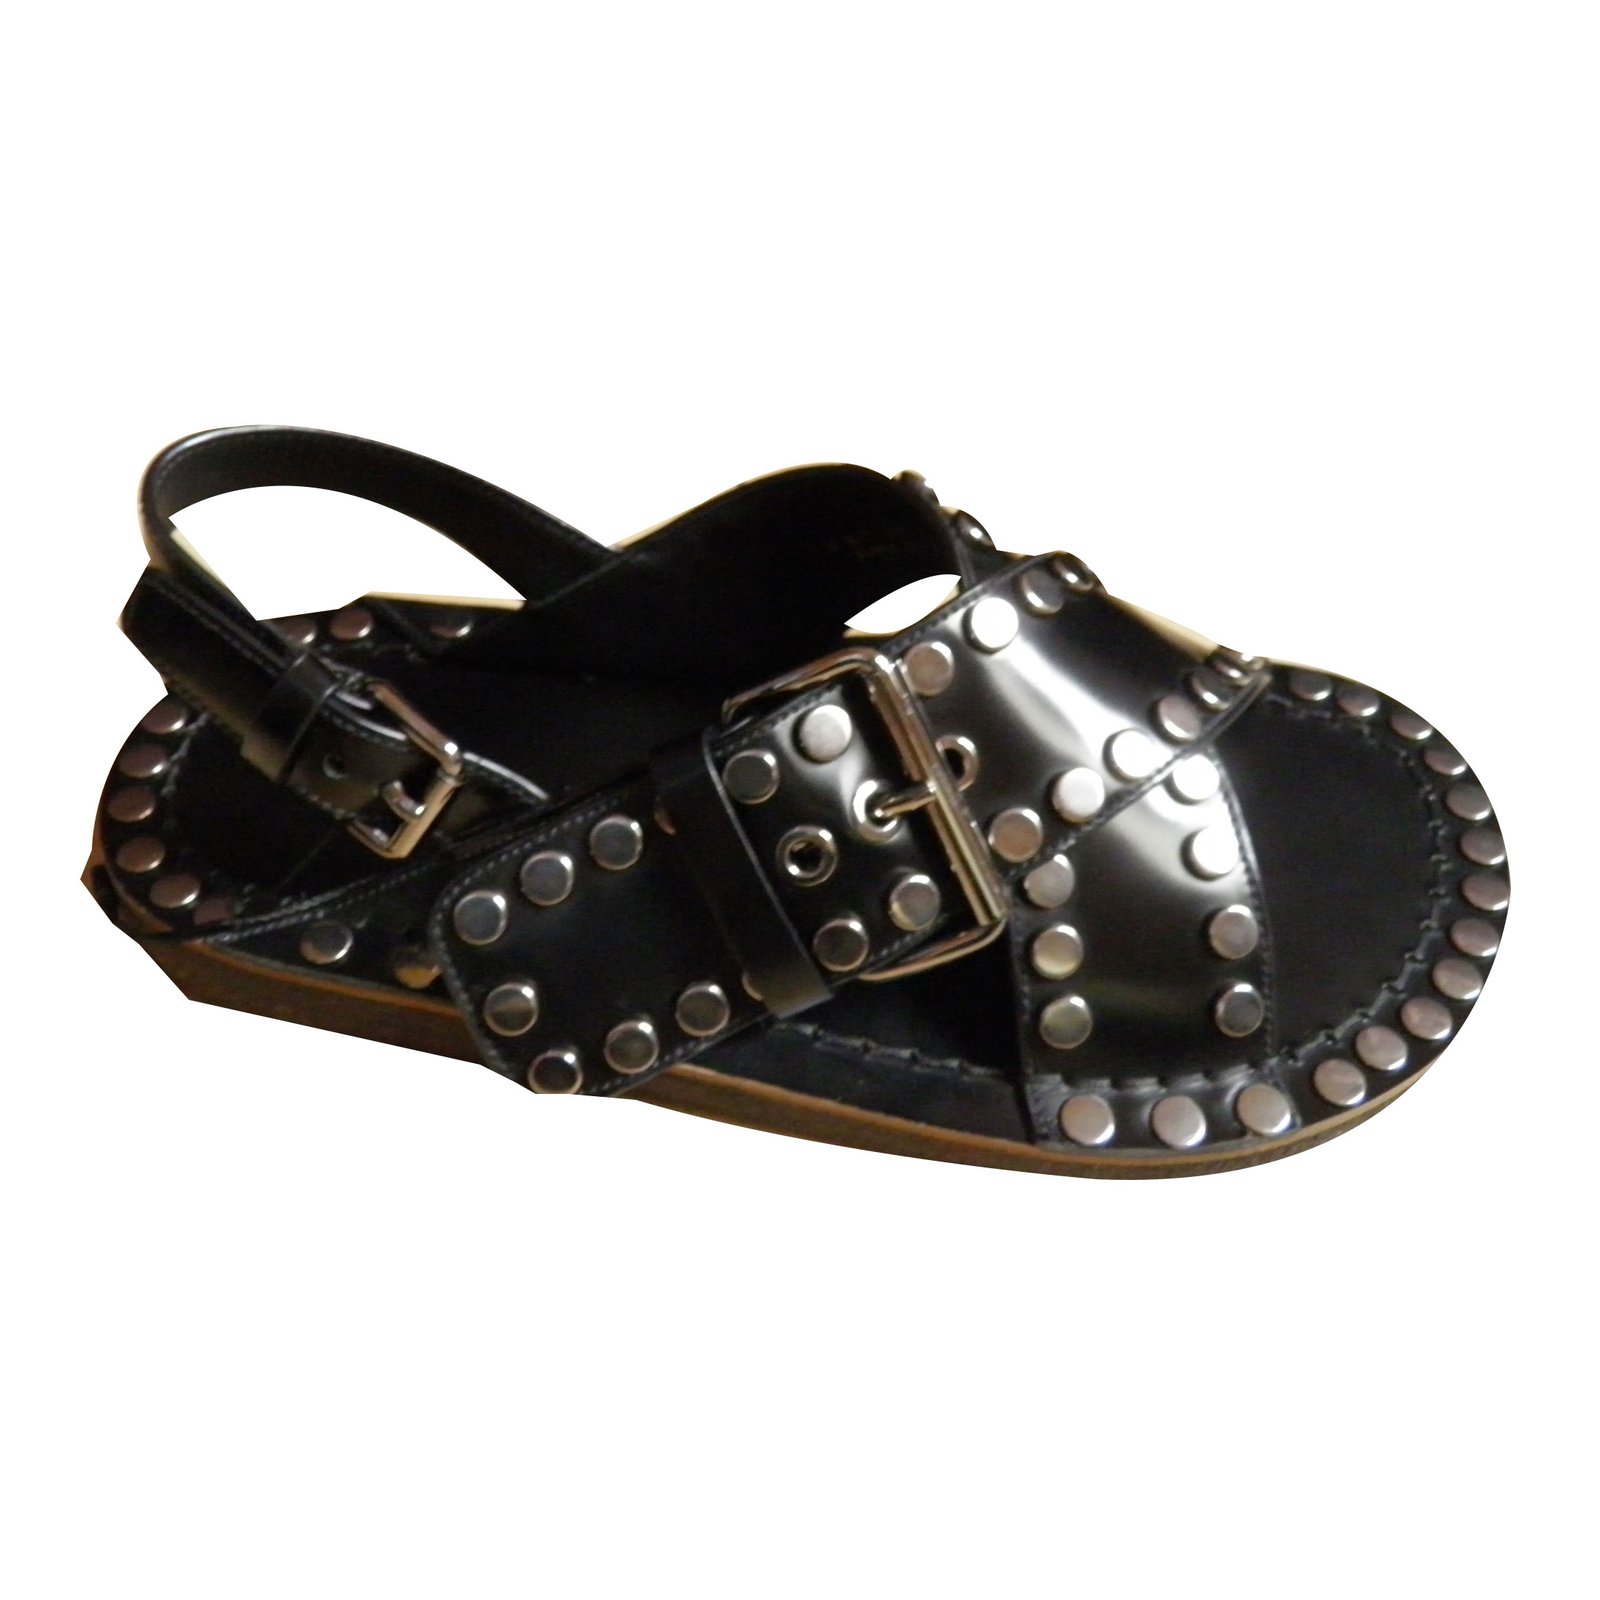 prada mens leather sandals